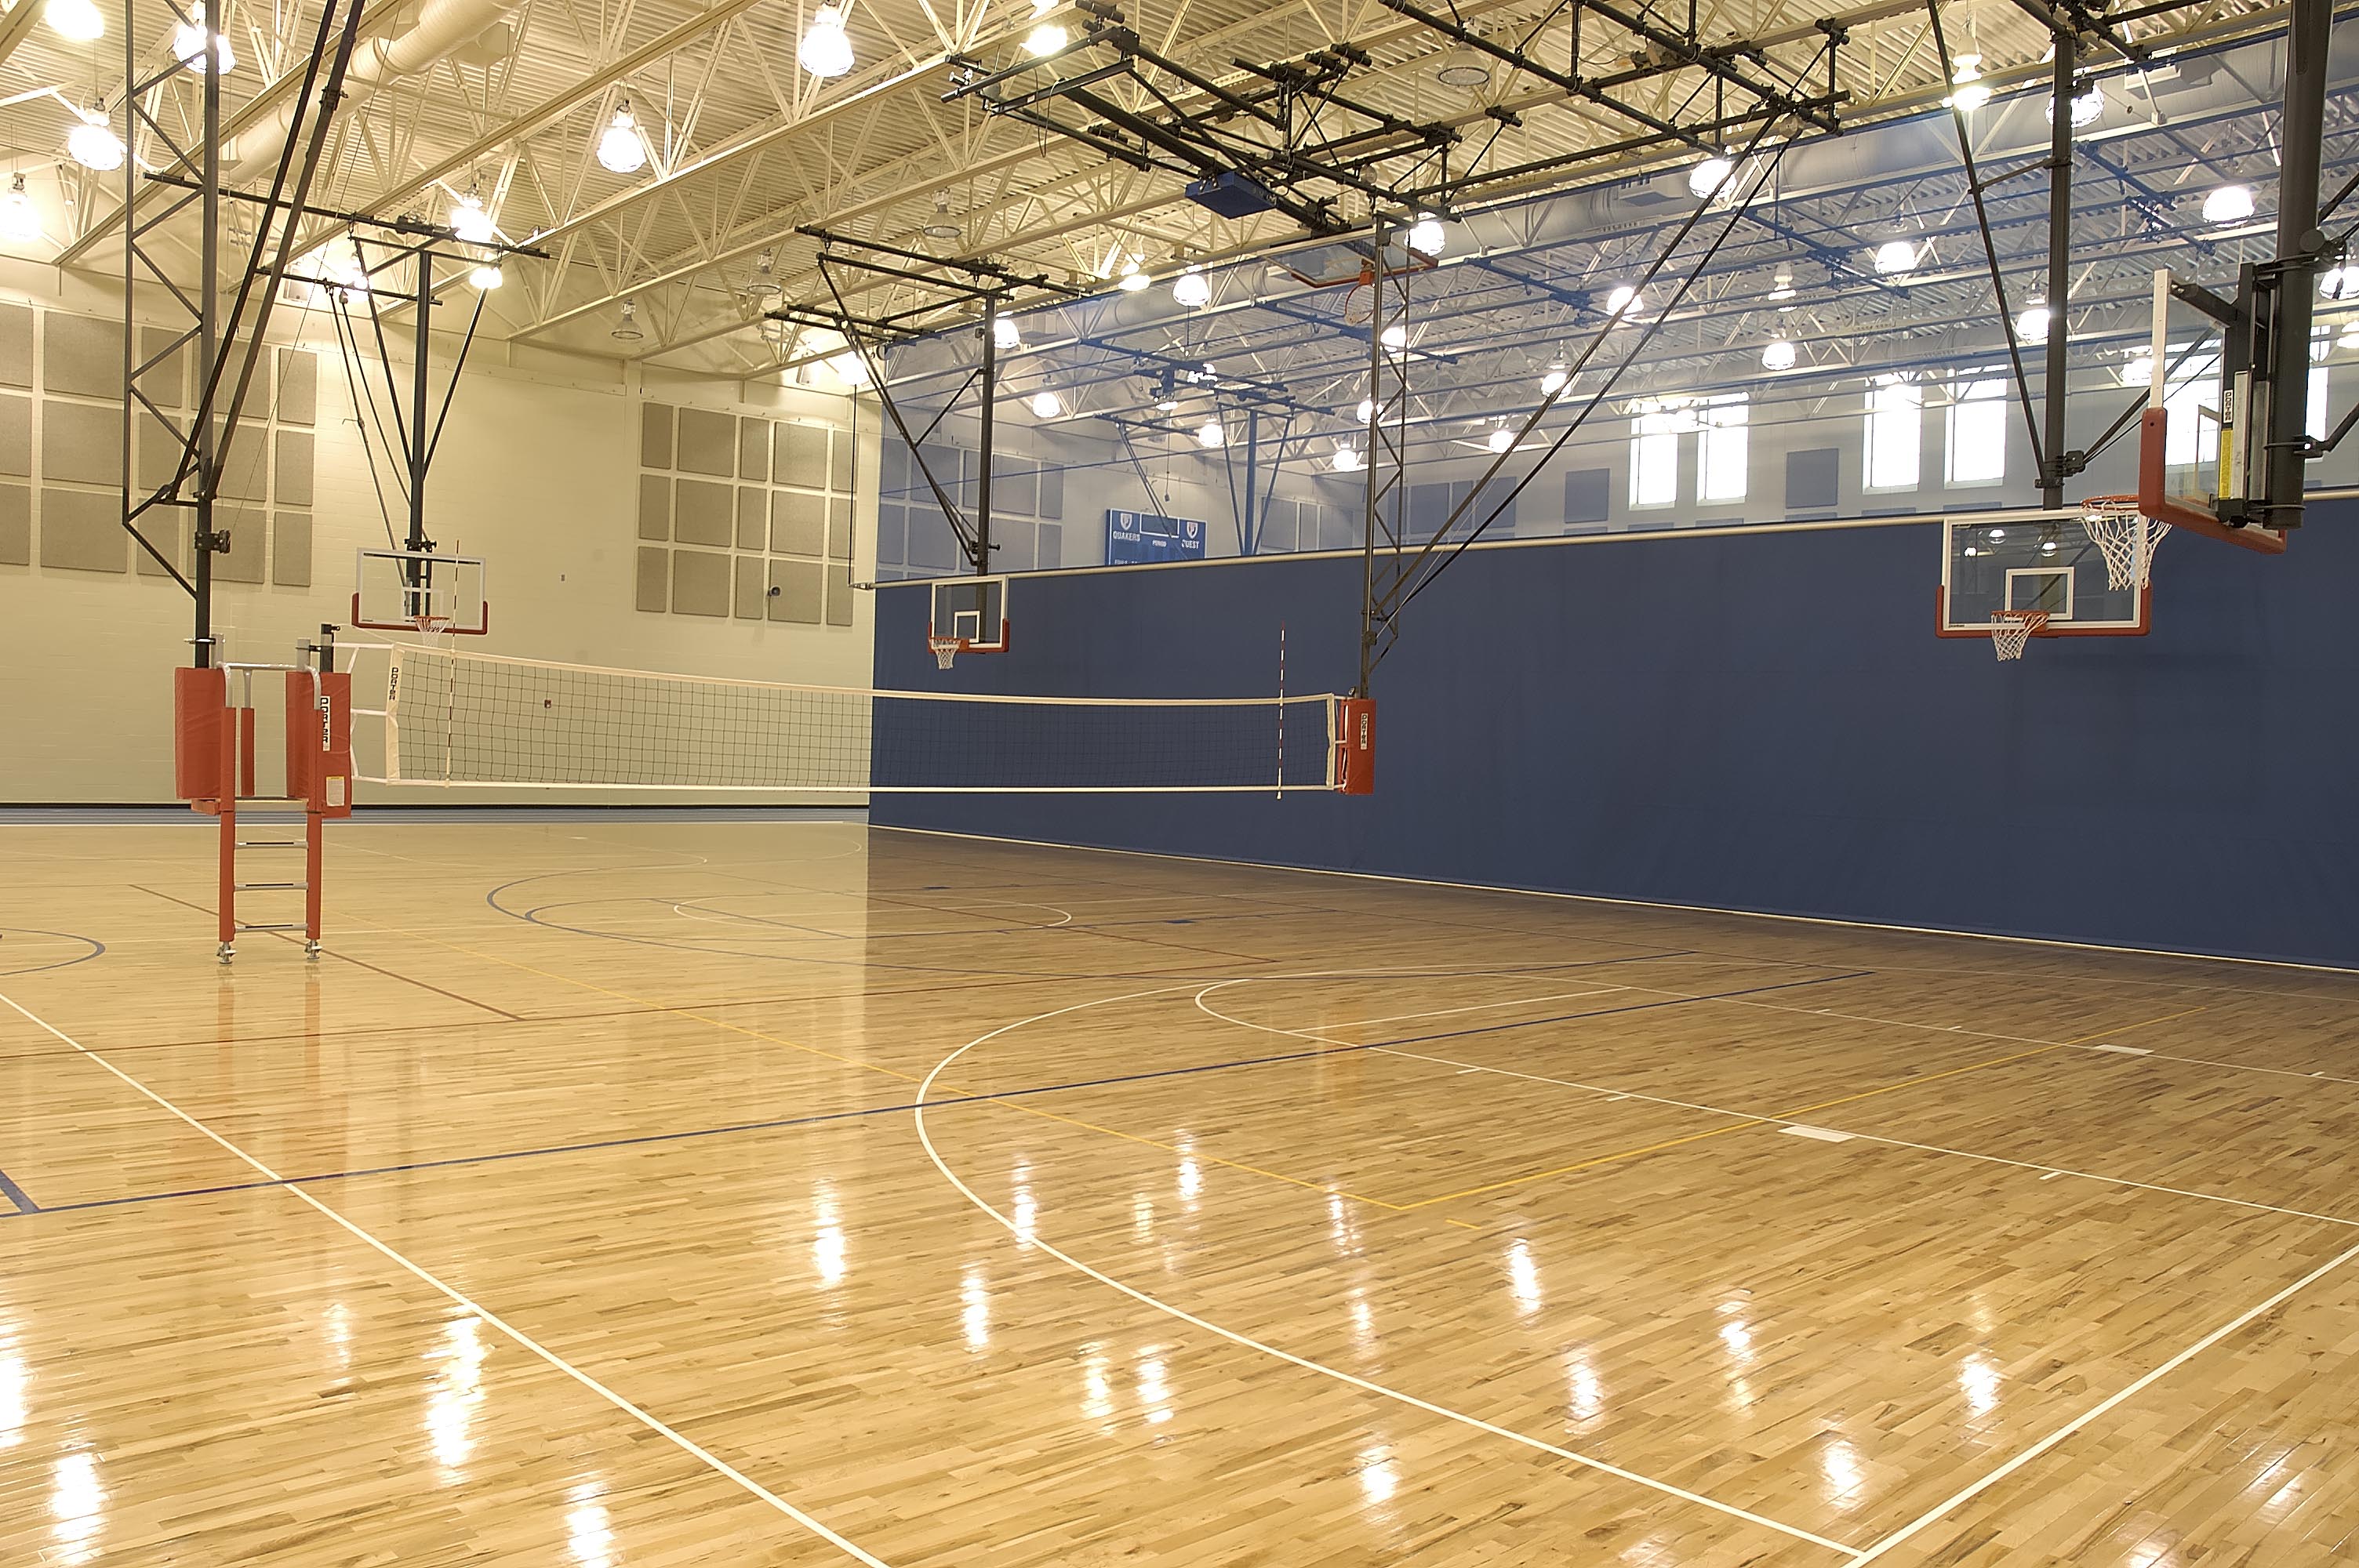 Gymnasium Volleyball Net